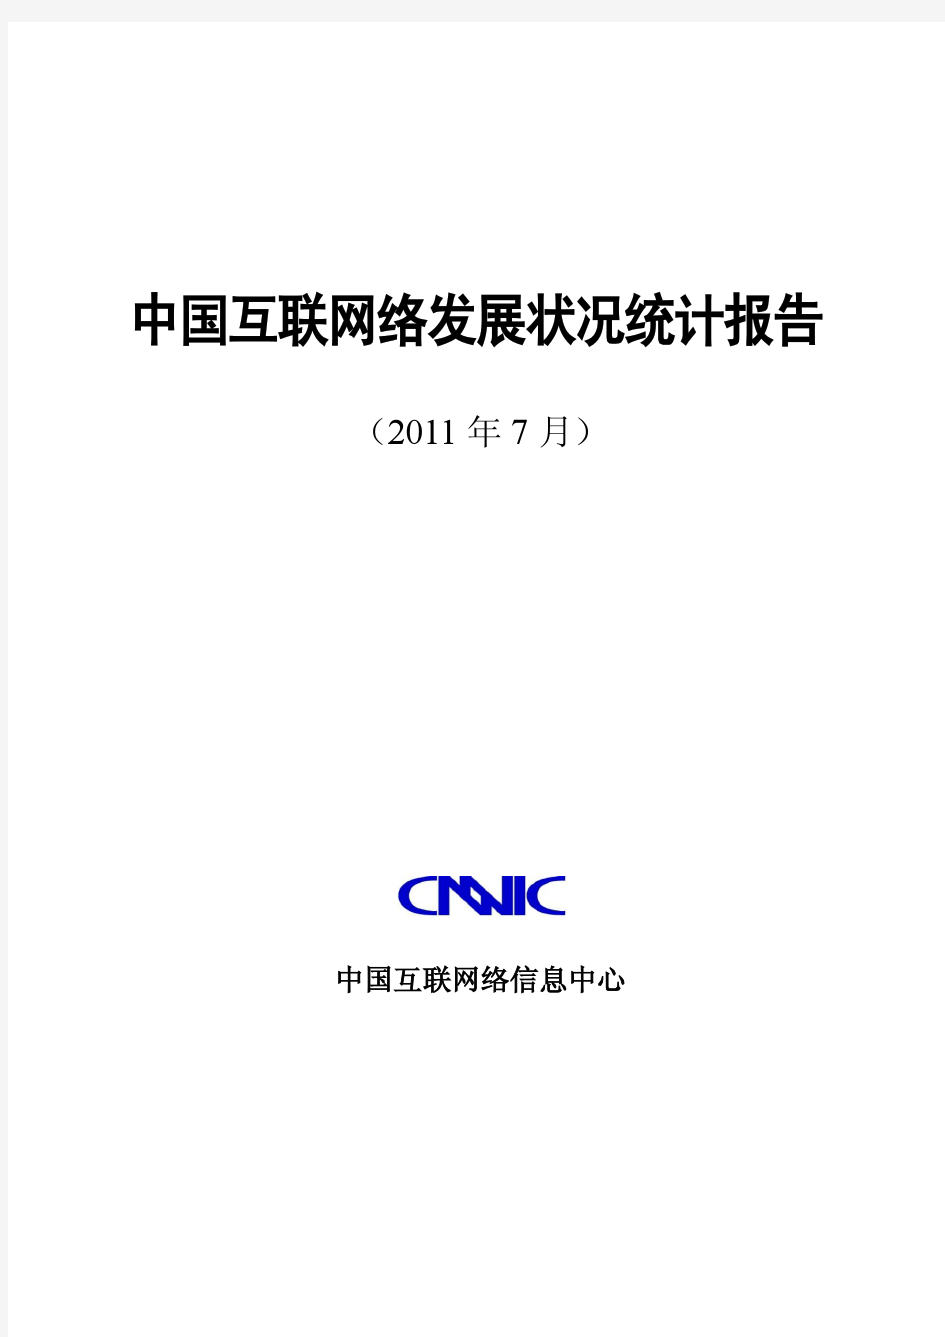 中国互联网络发展状况统计报告(第28次)